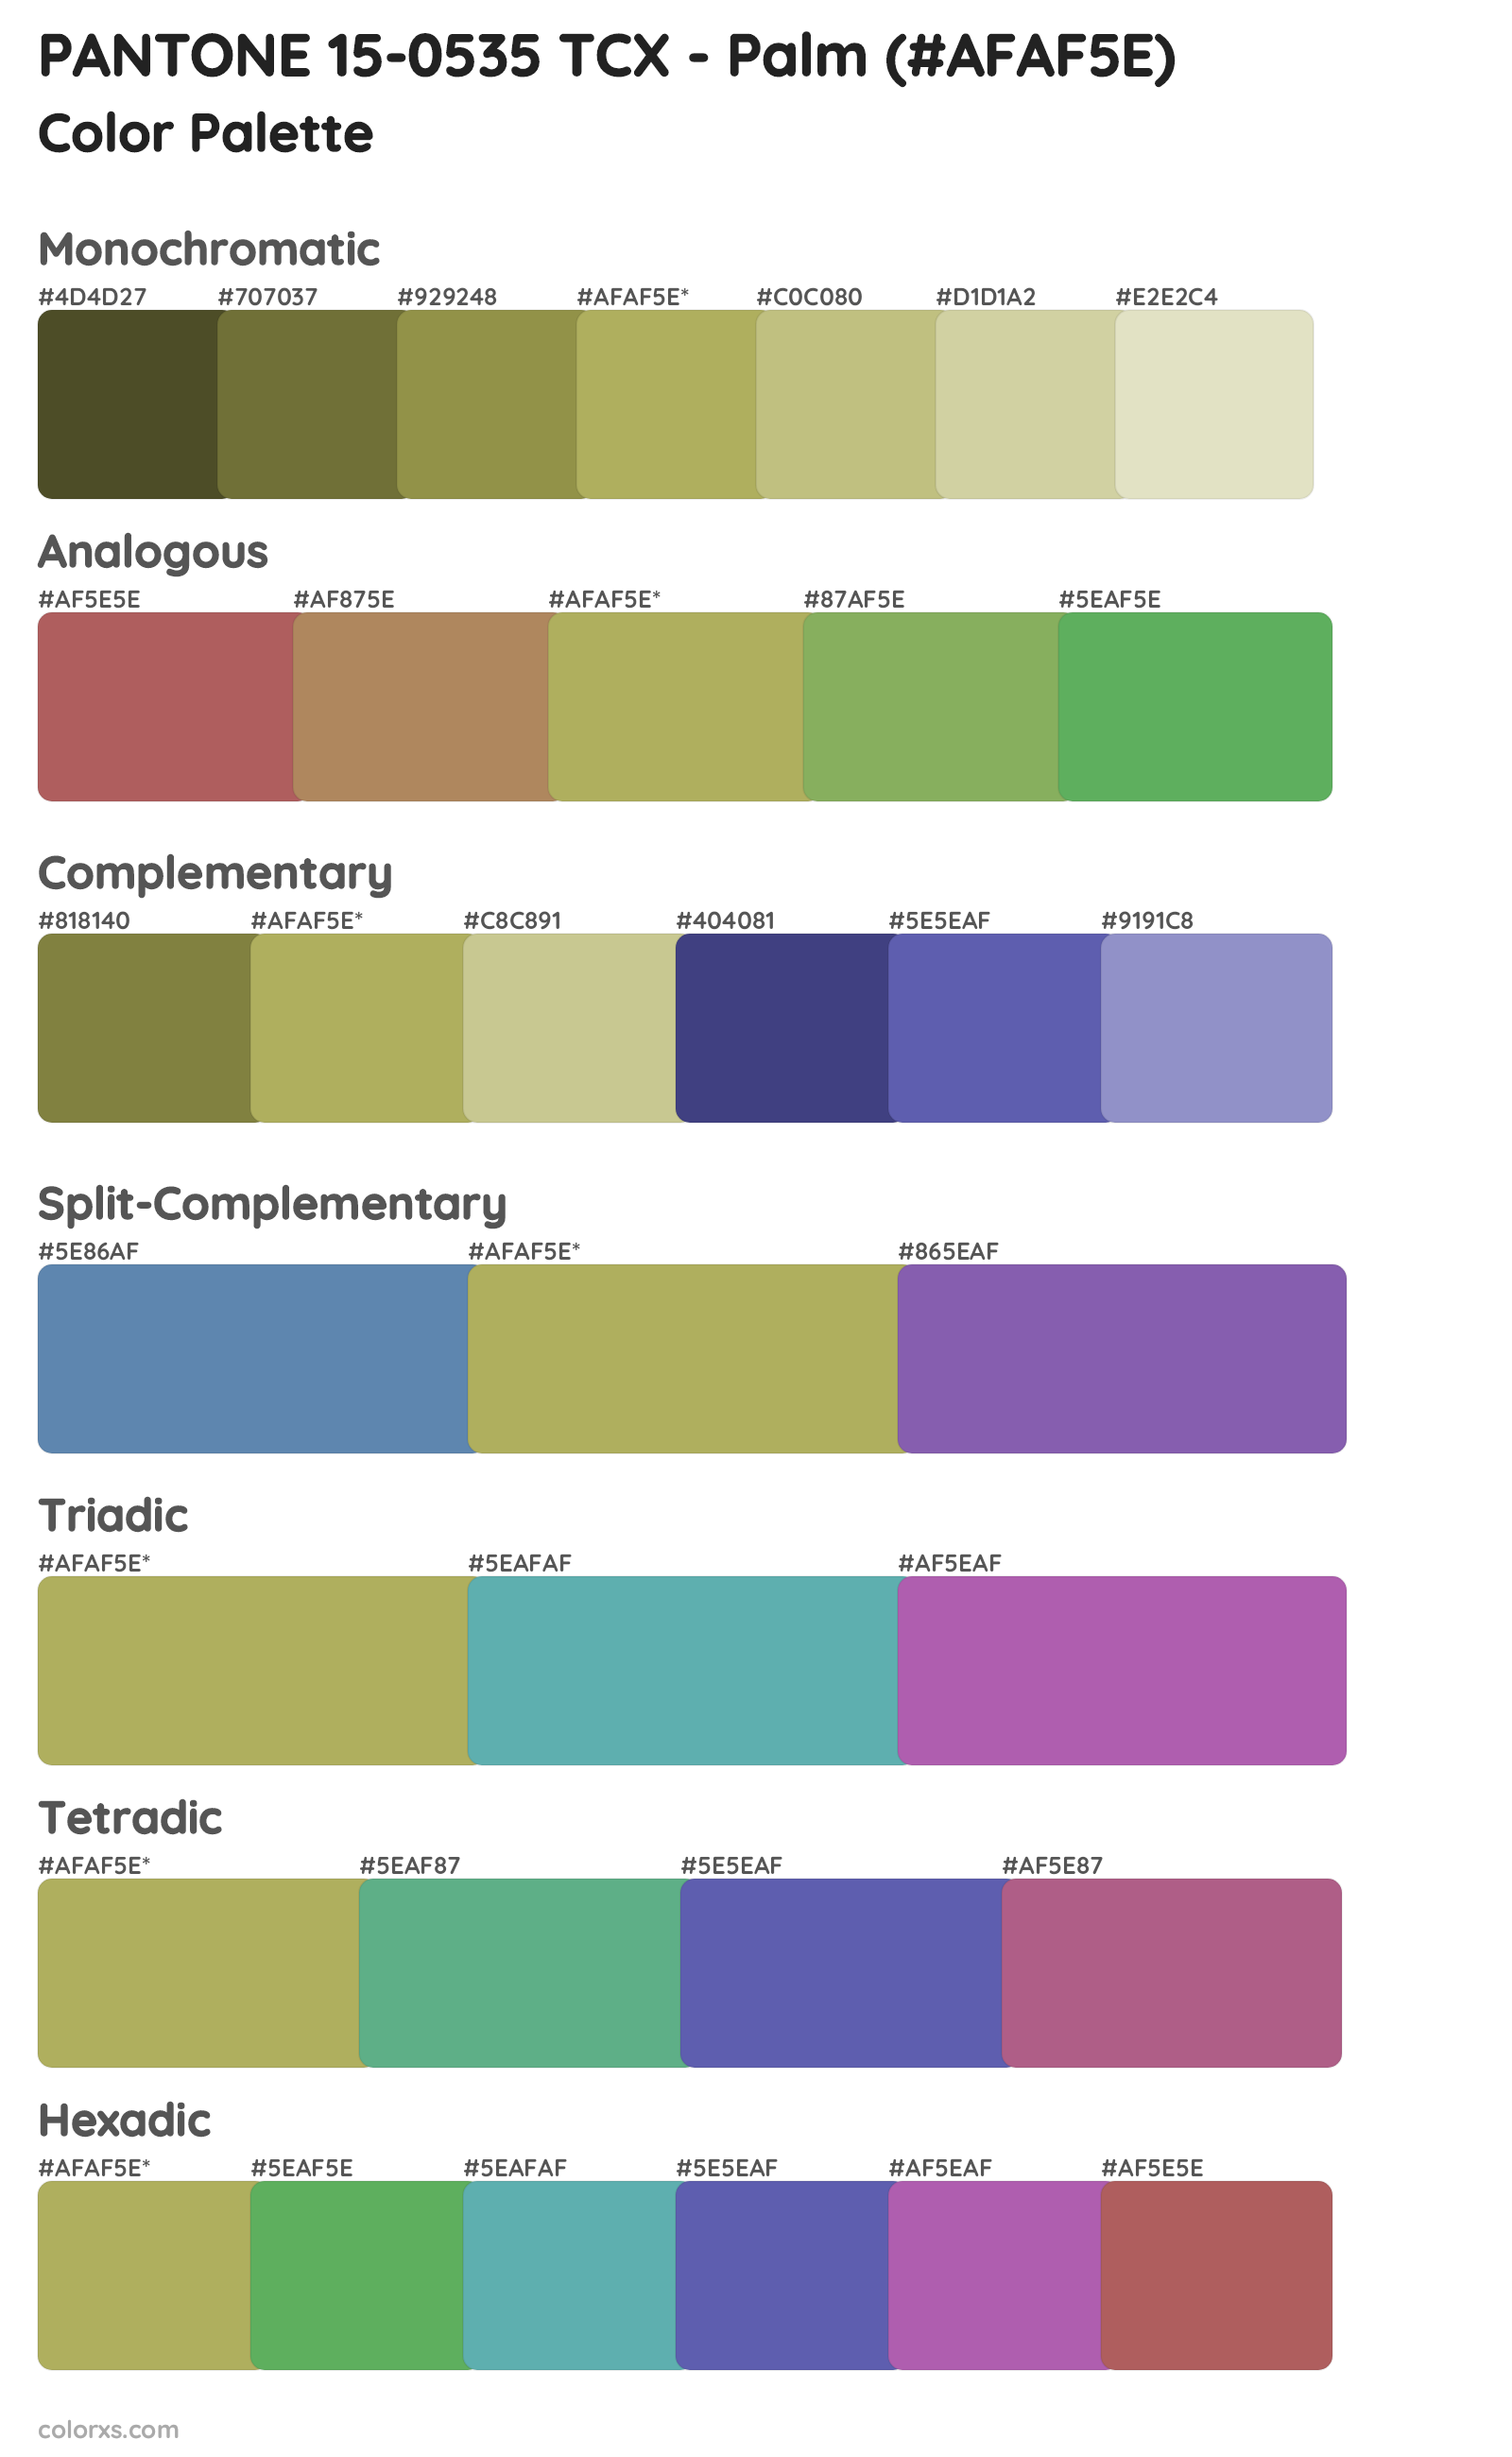 PANTONE 15-0535 TCX - Palm Color Scheme Palettes